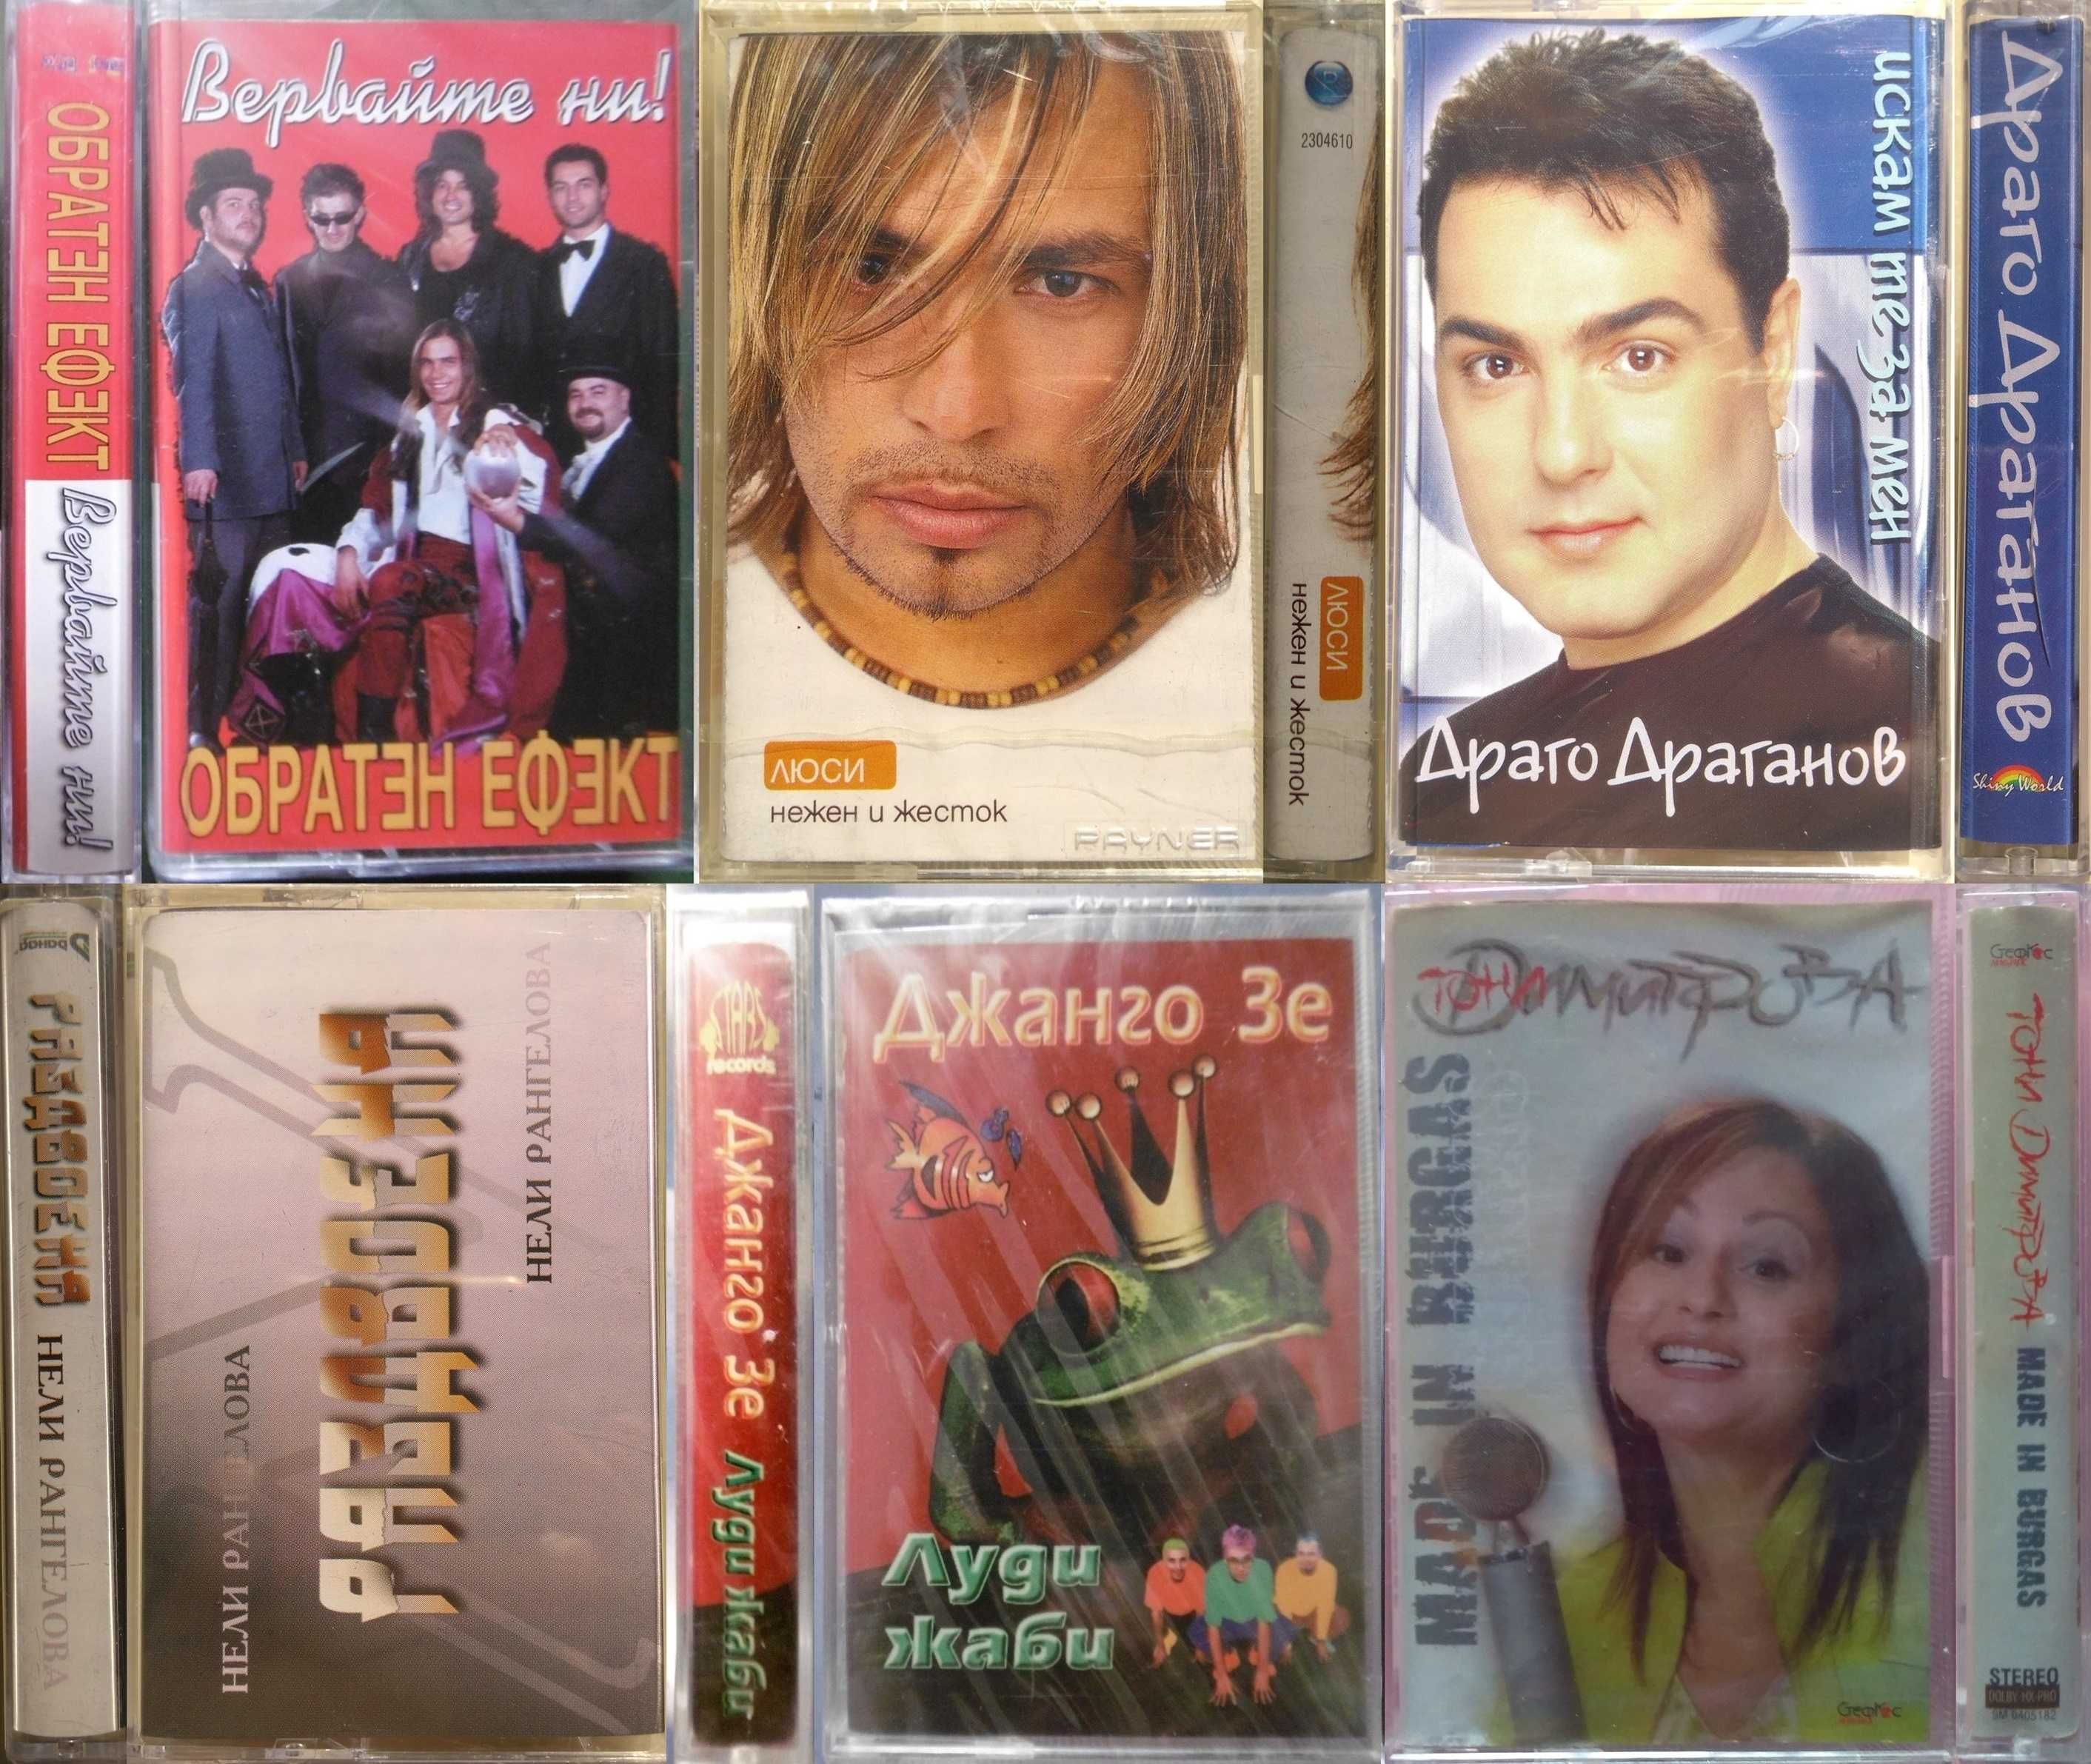 Българска музика на аудио касети.